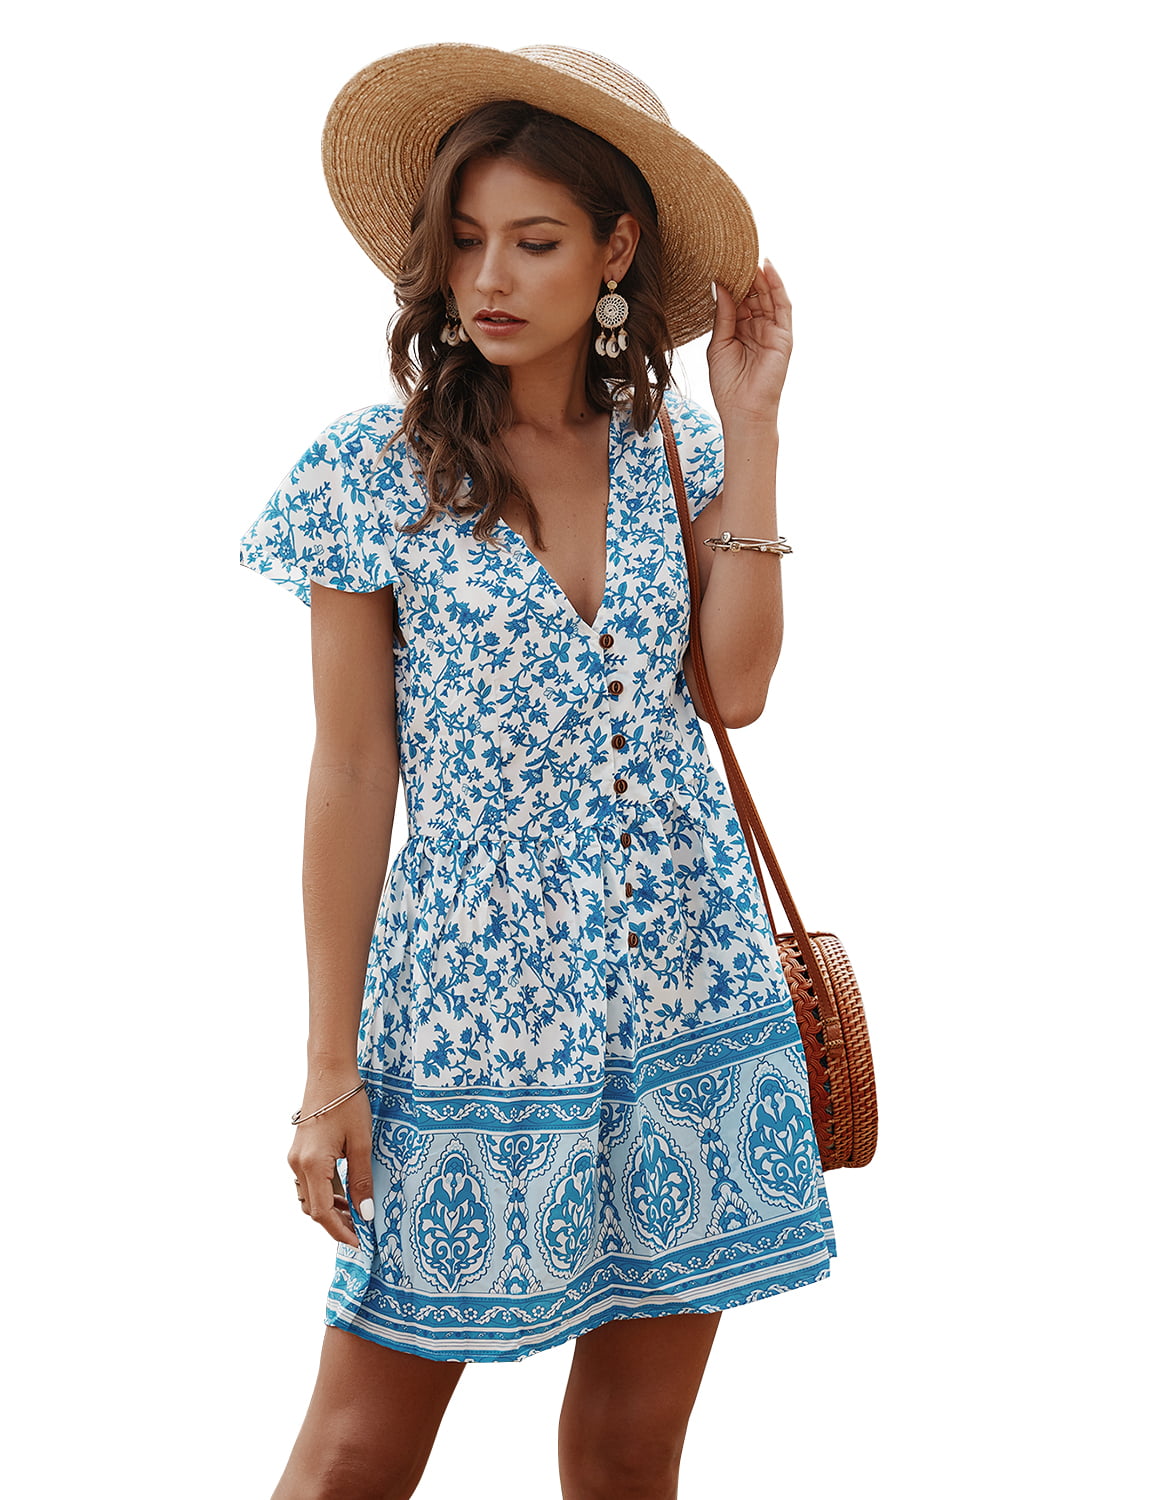 TOP SHE - Women's Causal Summer Dress Floral Print Short Sleeve Deep V ...